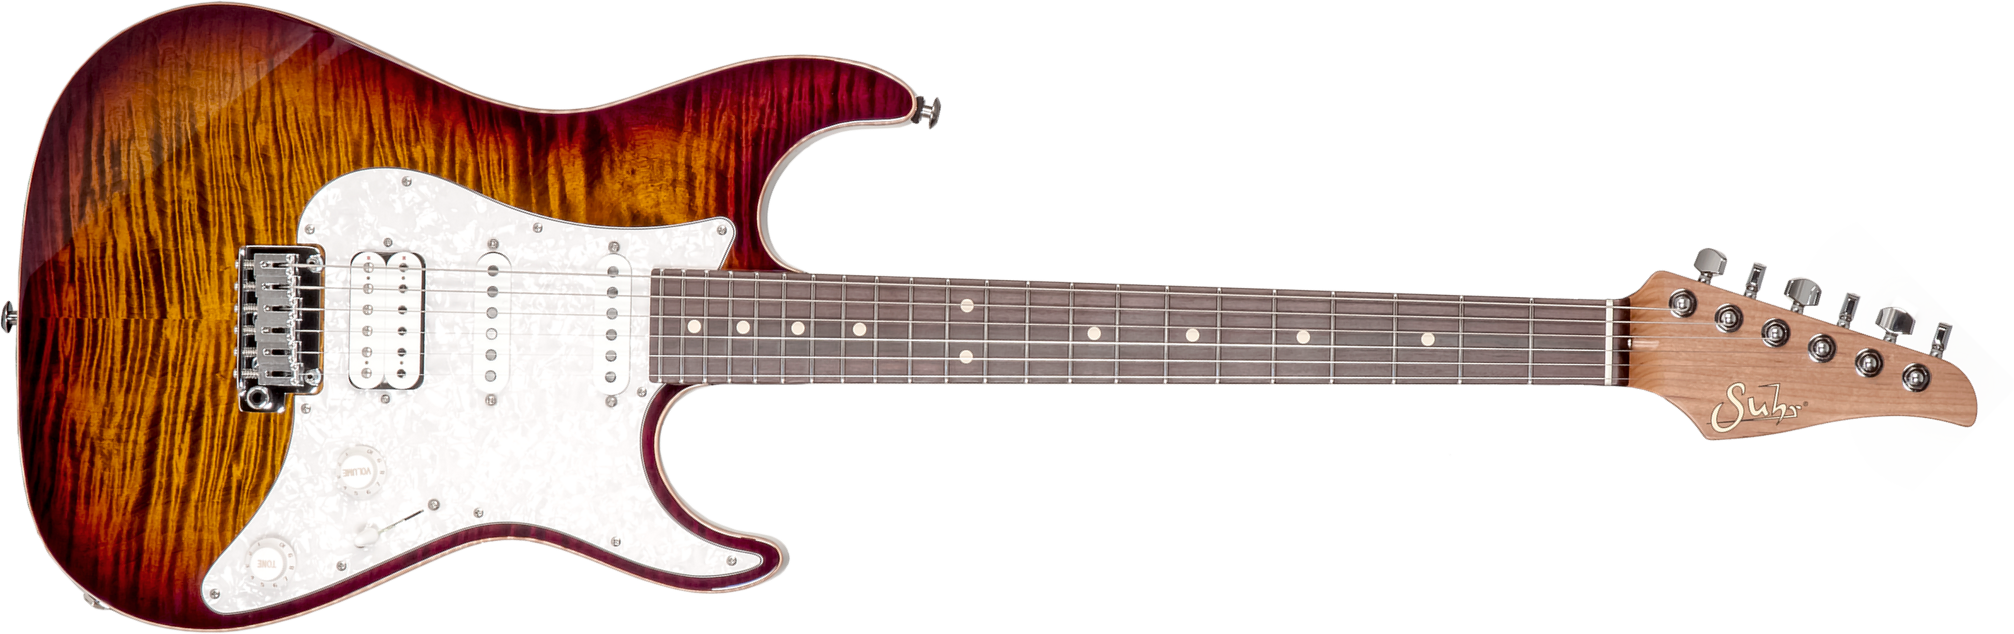 Suhr Standard Plus Usa Hss Trem Pf #72959 - Bengal Burst - Str shape electric guitar - Main picture